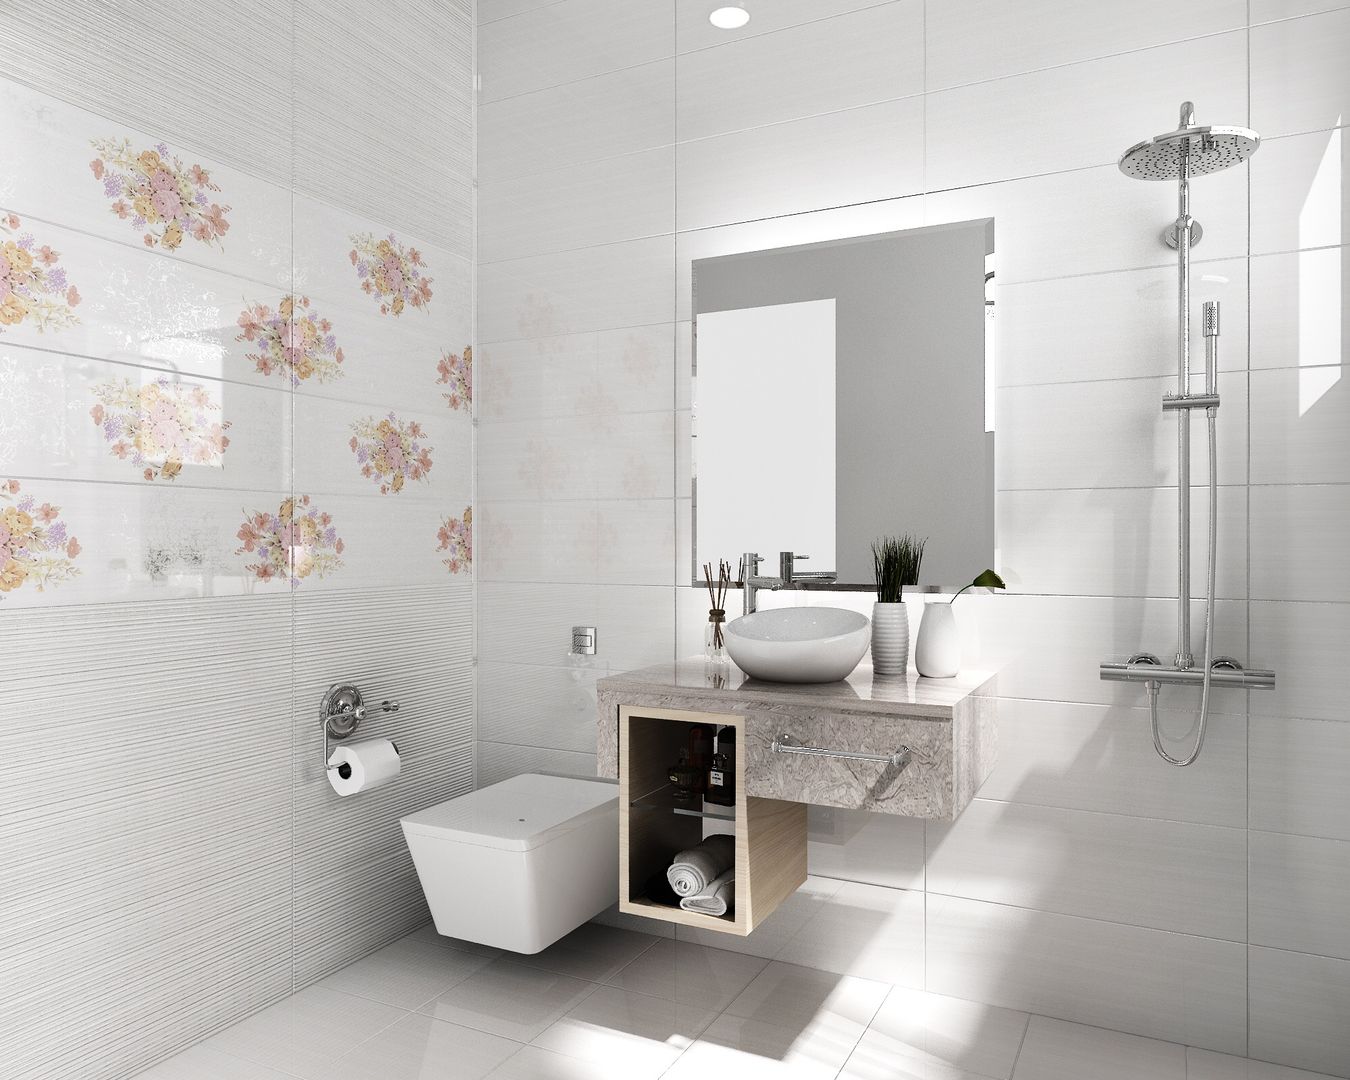 房屋新建 整修修繕 農舍別墅 景觀工程 homify Classic style bathroom Tiles